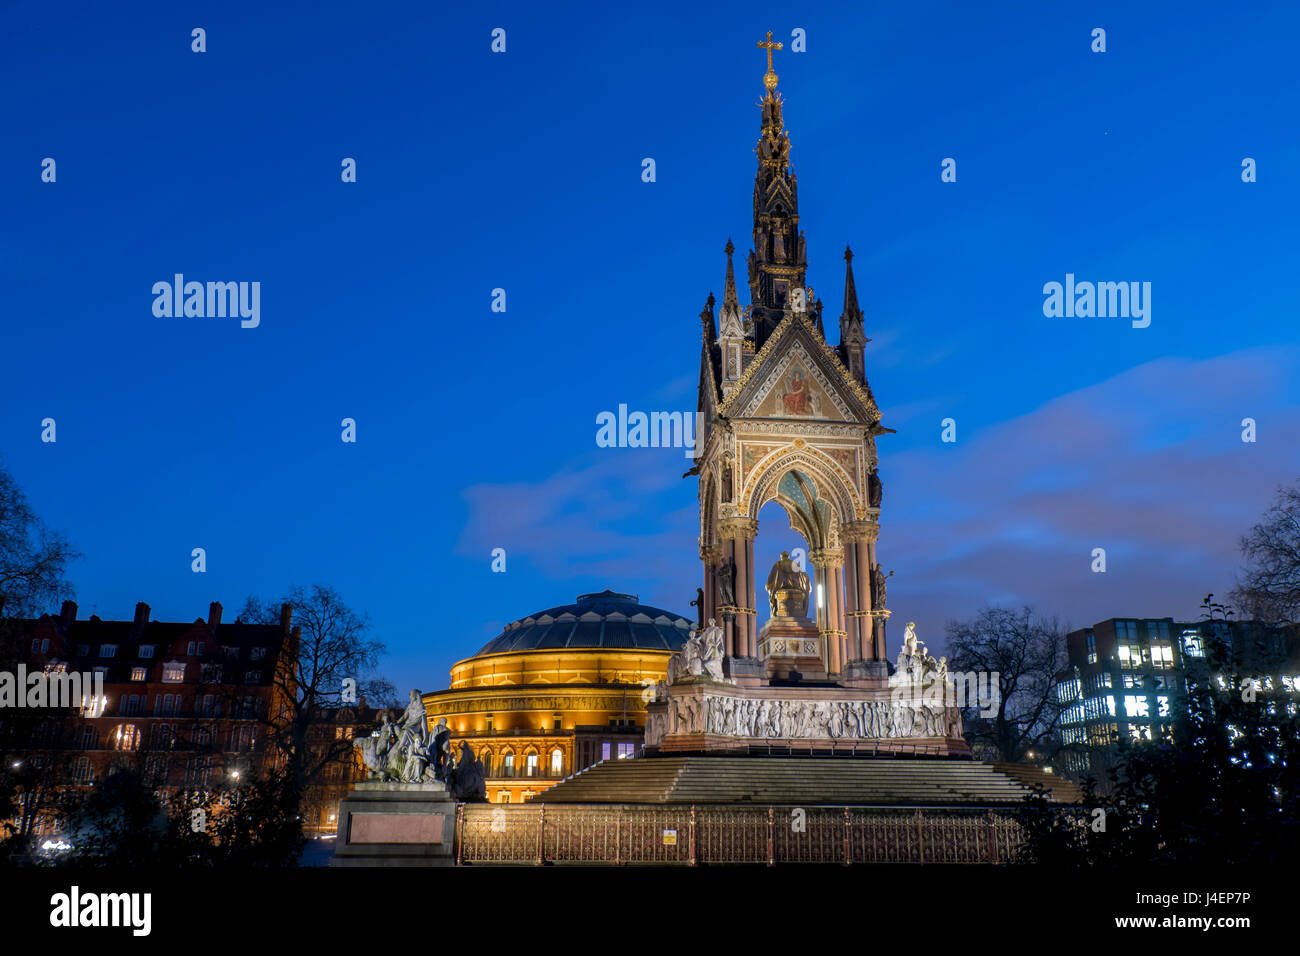 Albert Memorial et Albert Hall au crépuscule, Kensington, Londres, Angleterre, Royaume-Uni, Europe Banque D'Images